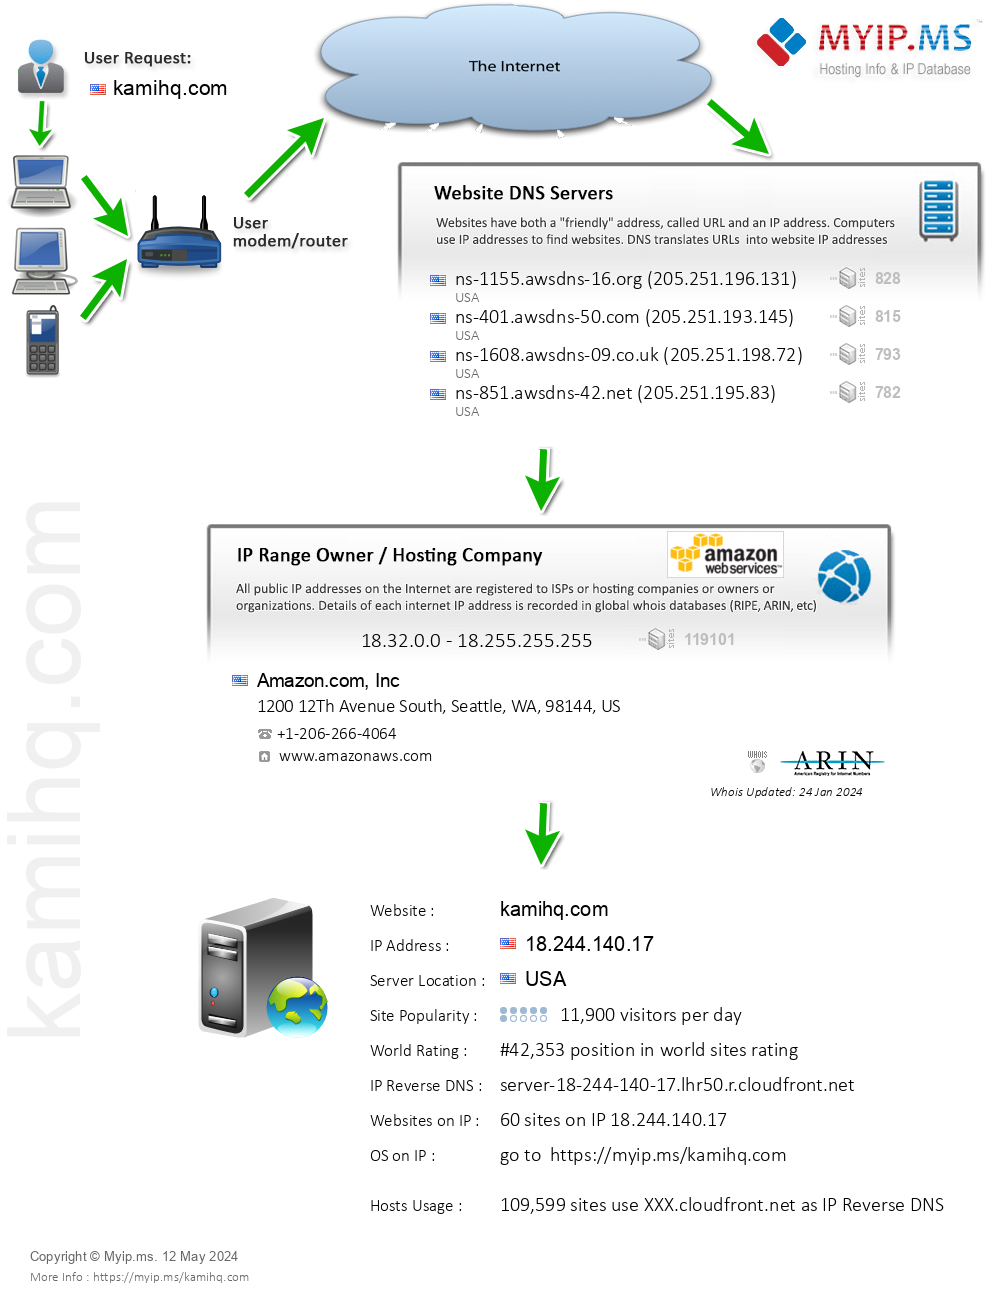 Kamihq.com - Website Hosting Visual IP Diagram